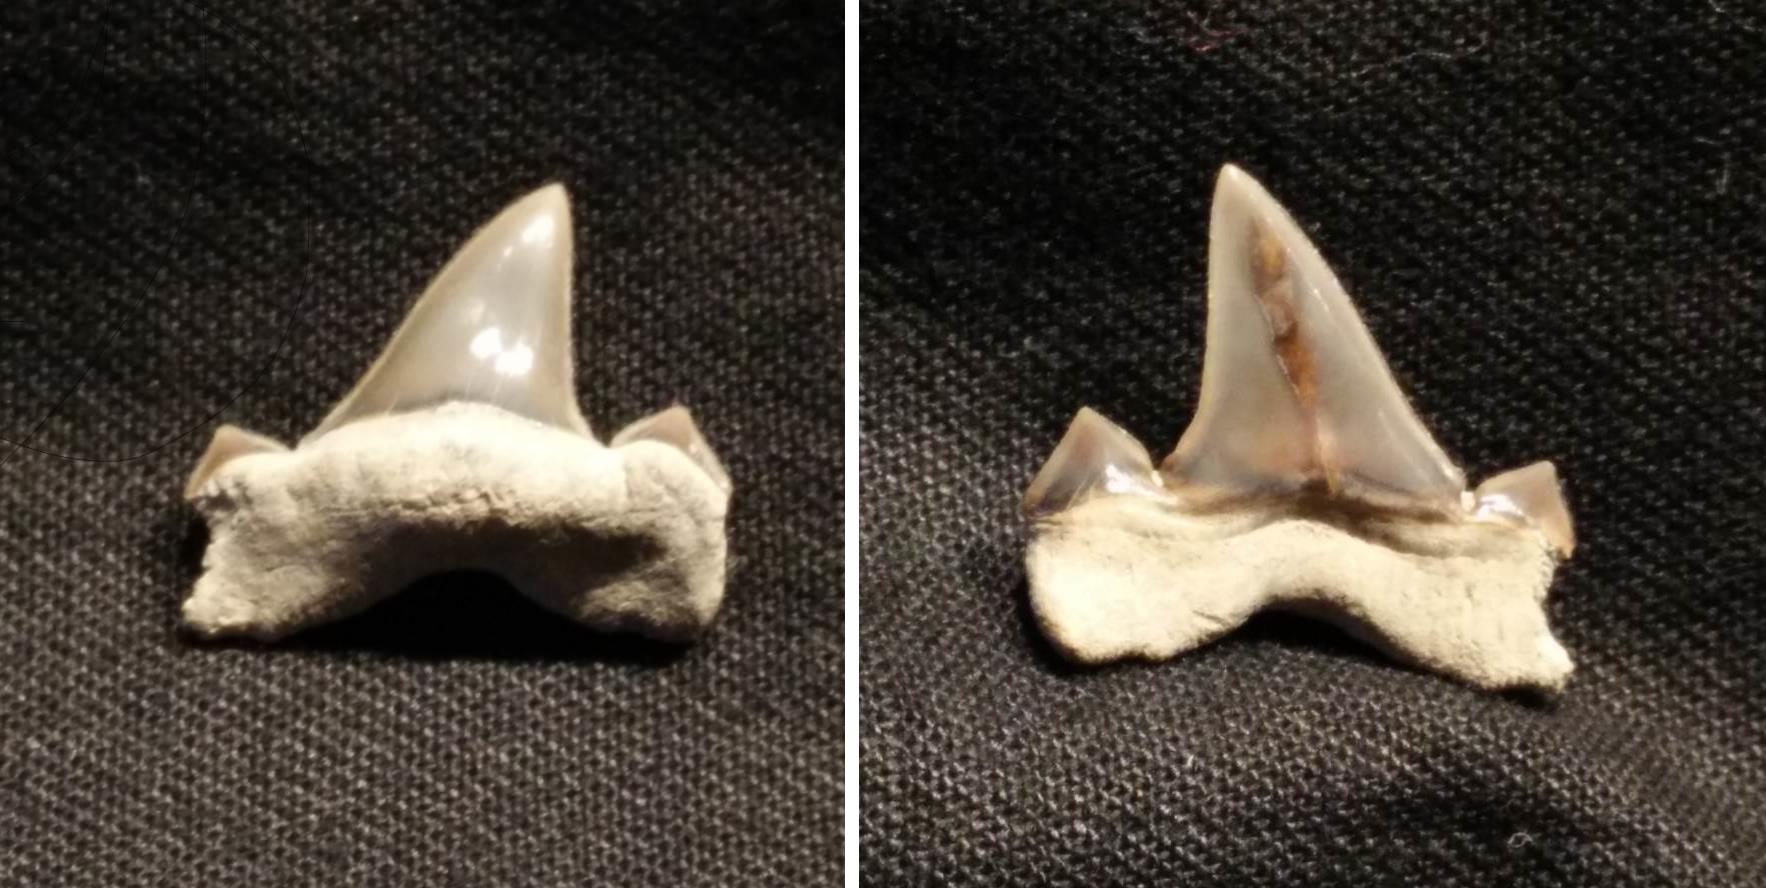 5x Versteinerte Haizähne 1,8-3 cm alter ca 40-70 Mio JahreFossil Shark teeth 